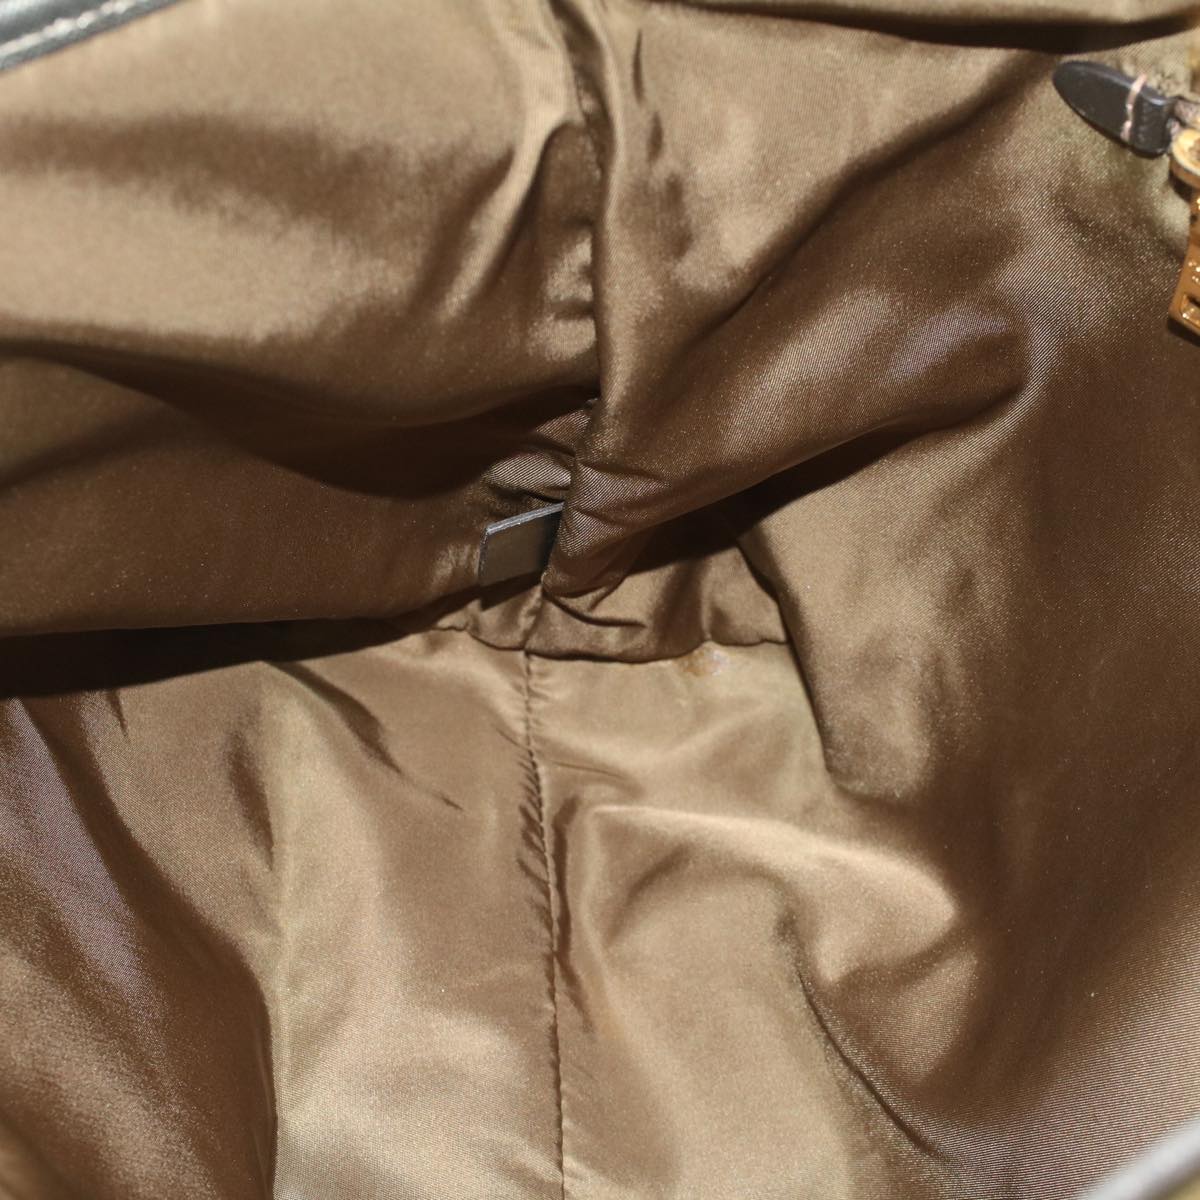 PRADA Tote Bag Nylon Leather Khaki Auth hk813